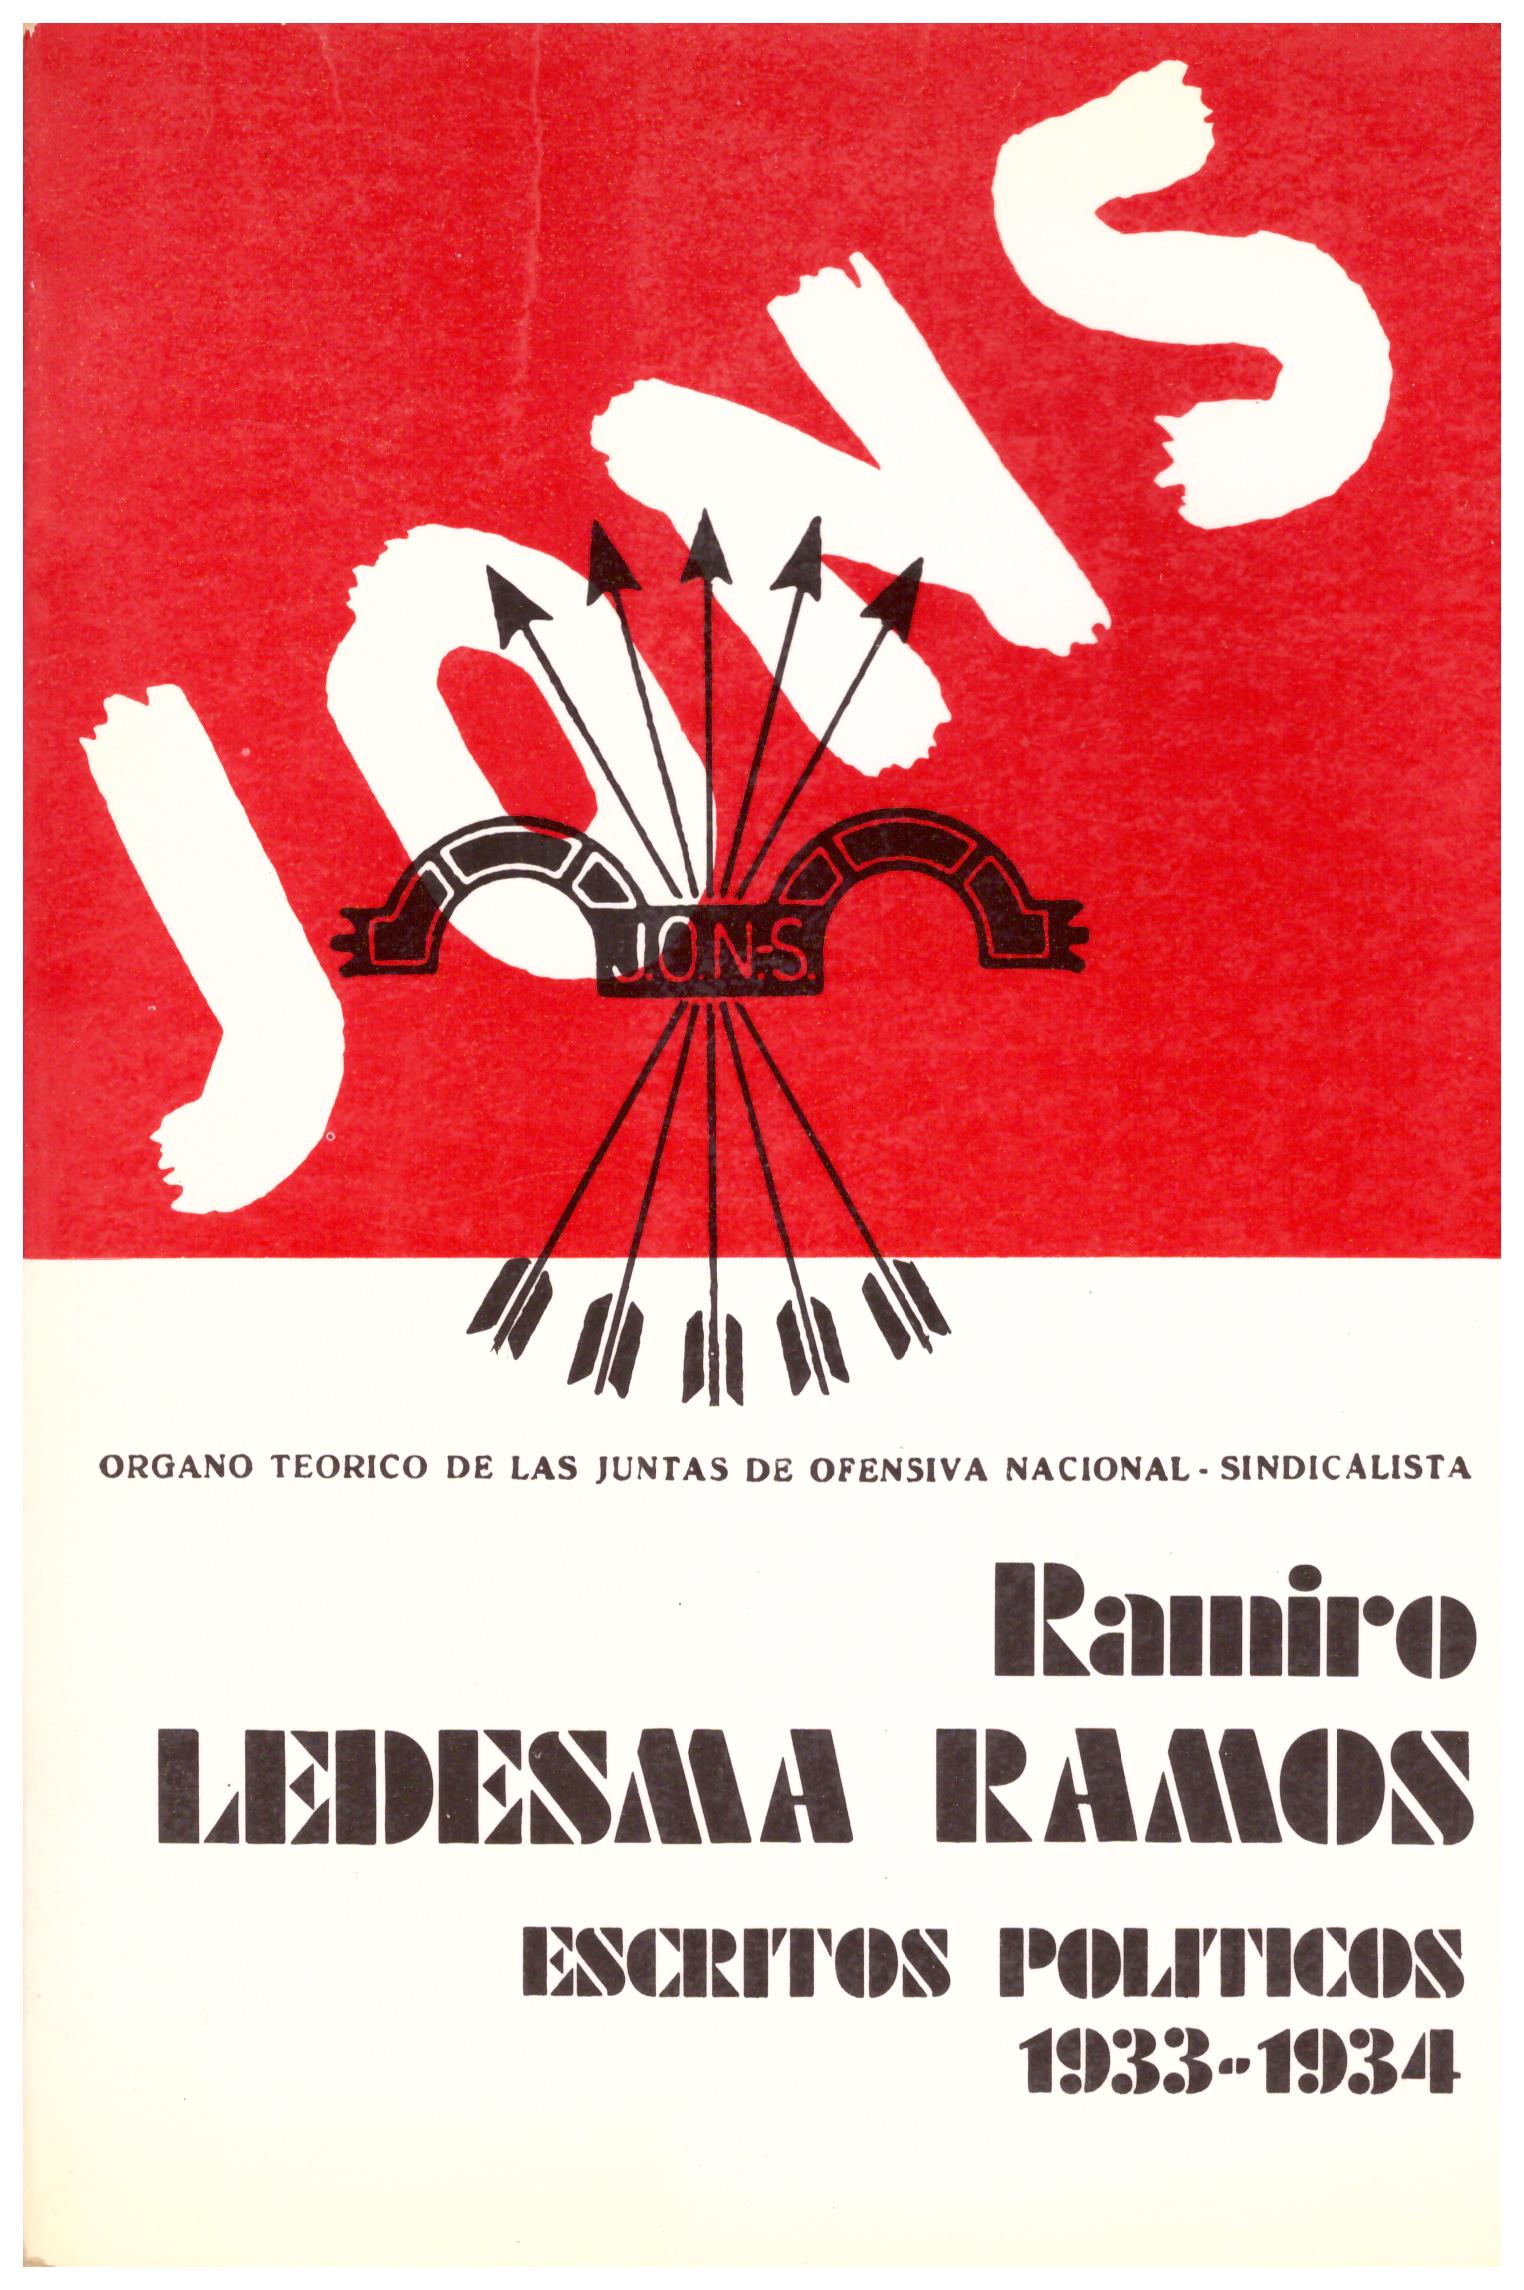 Ramiro. Ledesma Ramos. Escritos Politicos - Jons 1933-1934 (organo teorico de las juntas de ofensiva nacional-sindacalista)